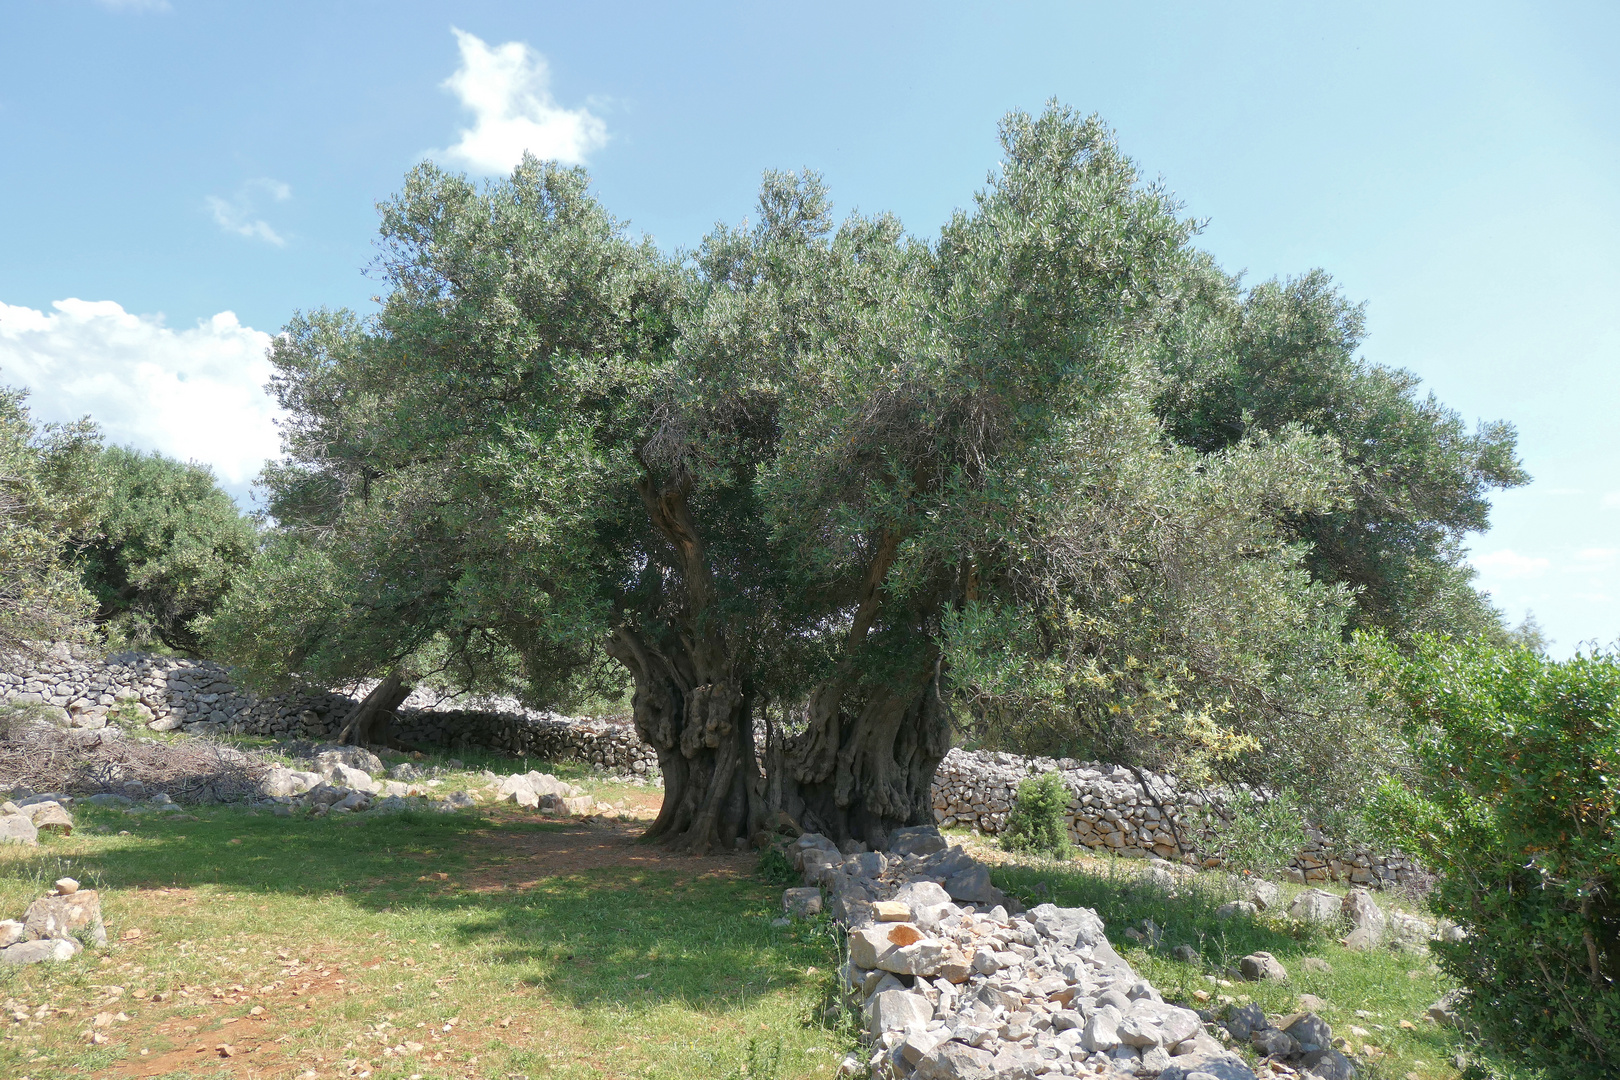 Der älteste wilde Olivenbaum in Lun